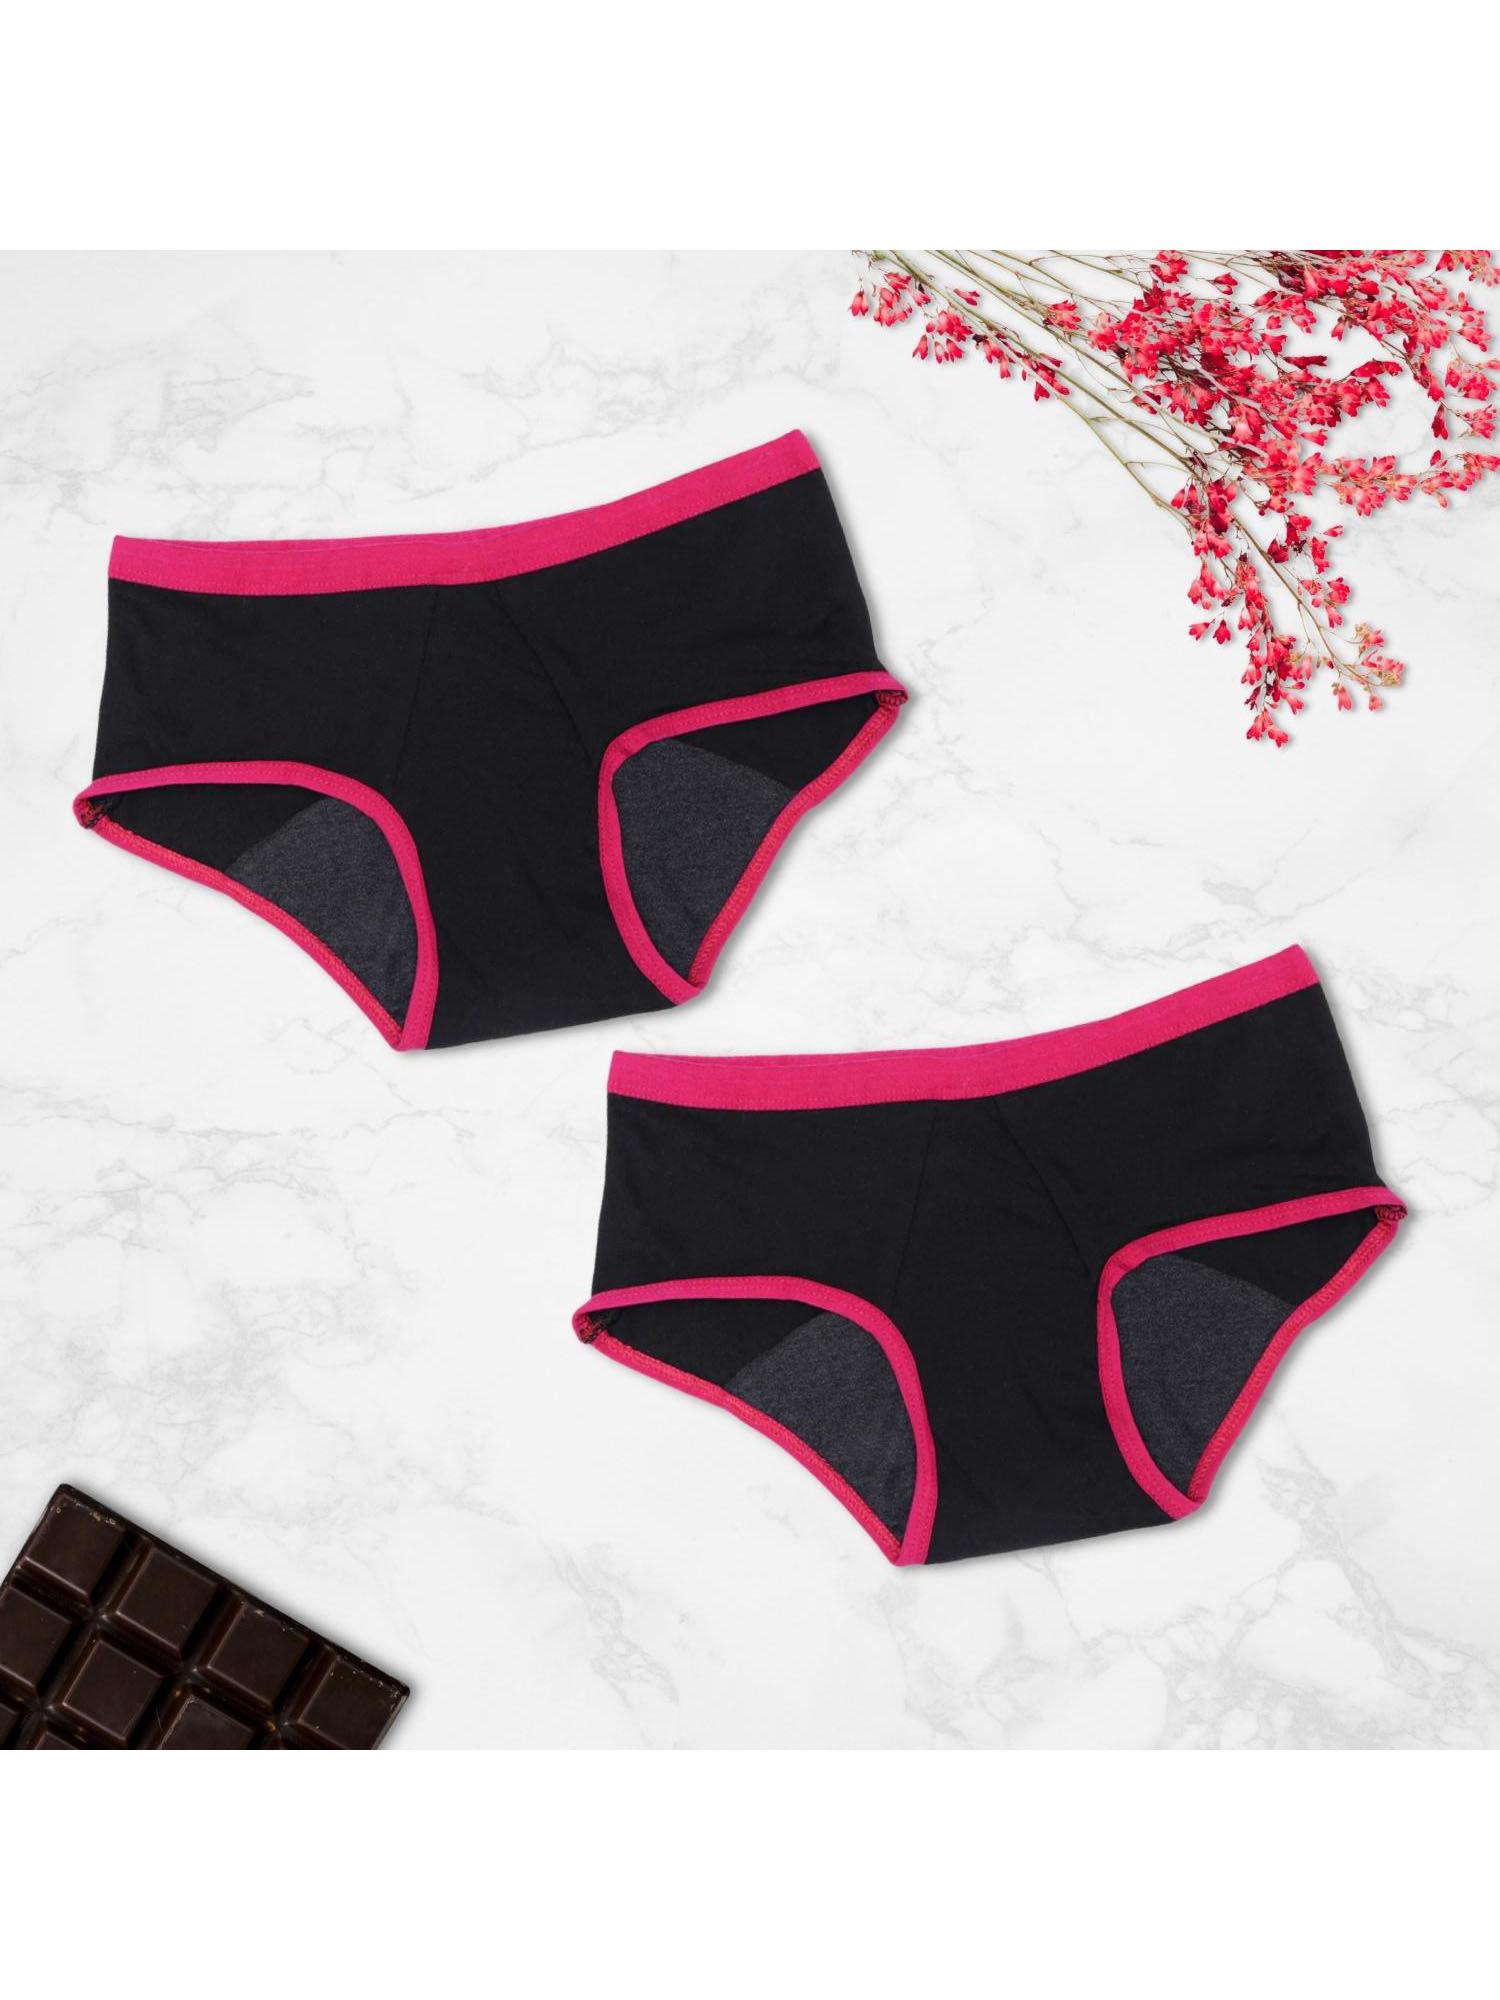 girls solid black reusable leakproof period panties (pack of 2)